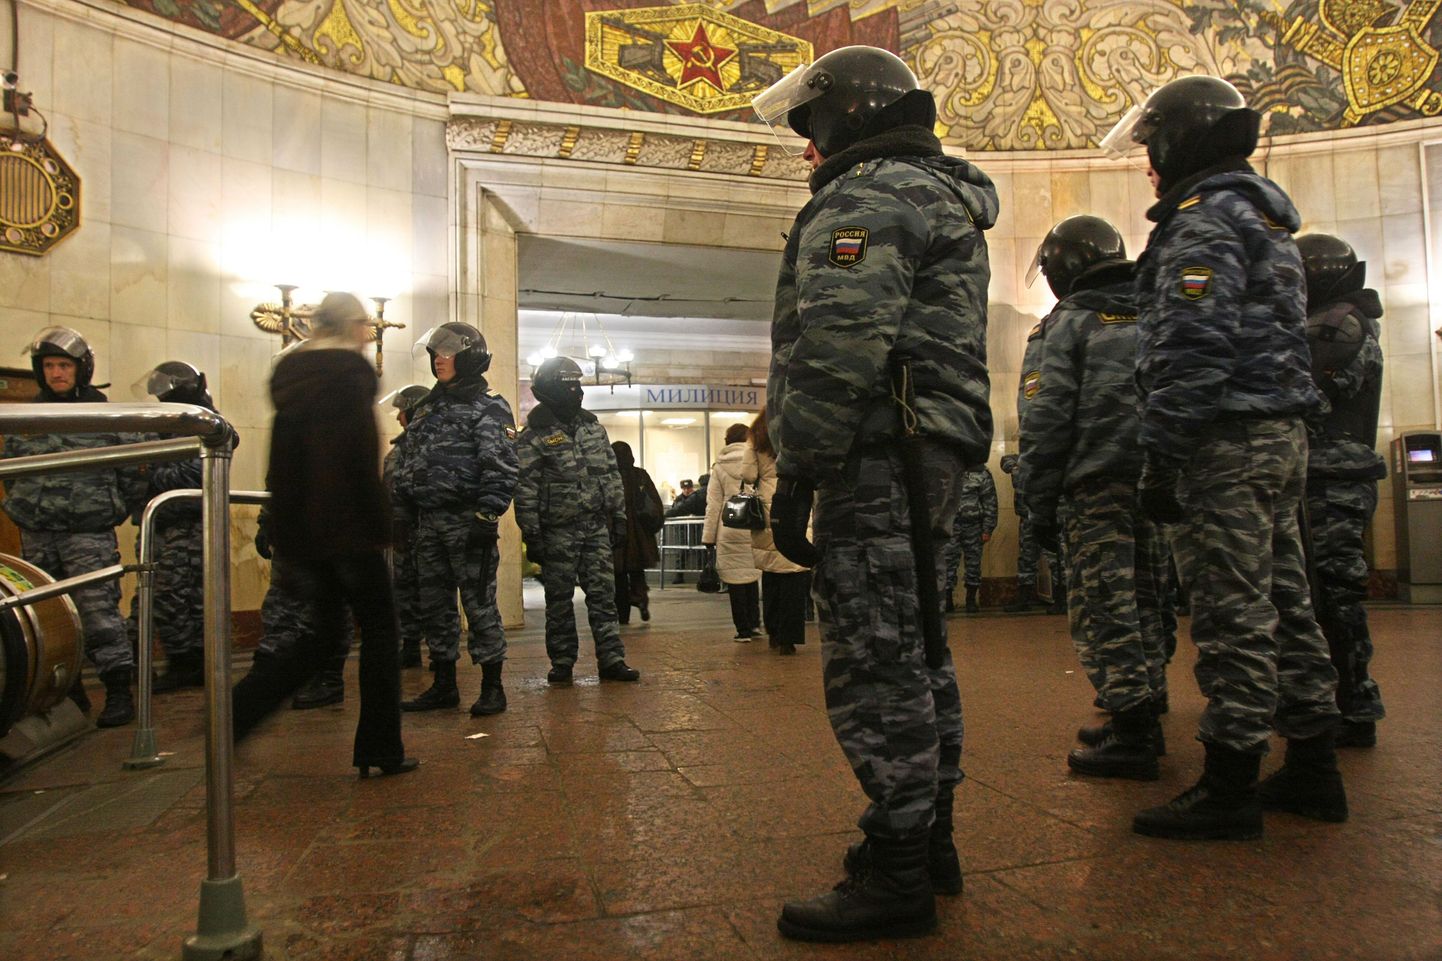 Märulimilitsionäärid Moskva Smolenskaja metroojaamas.